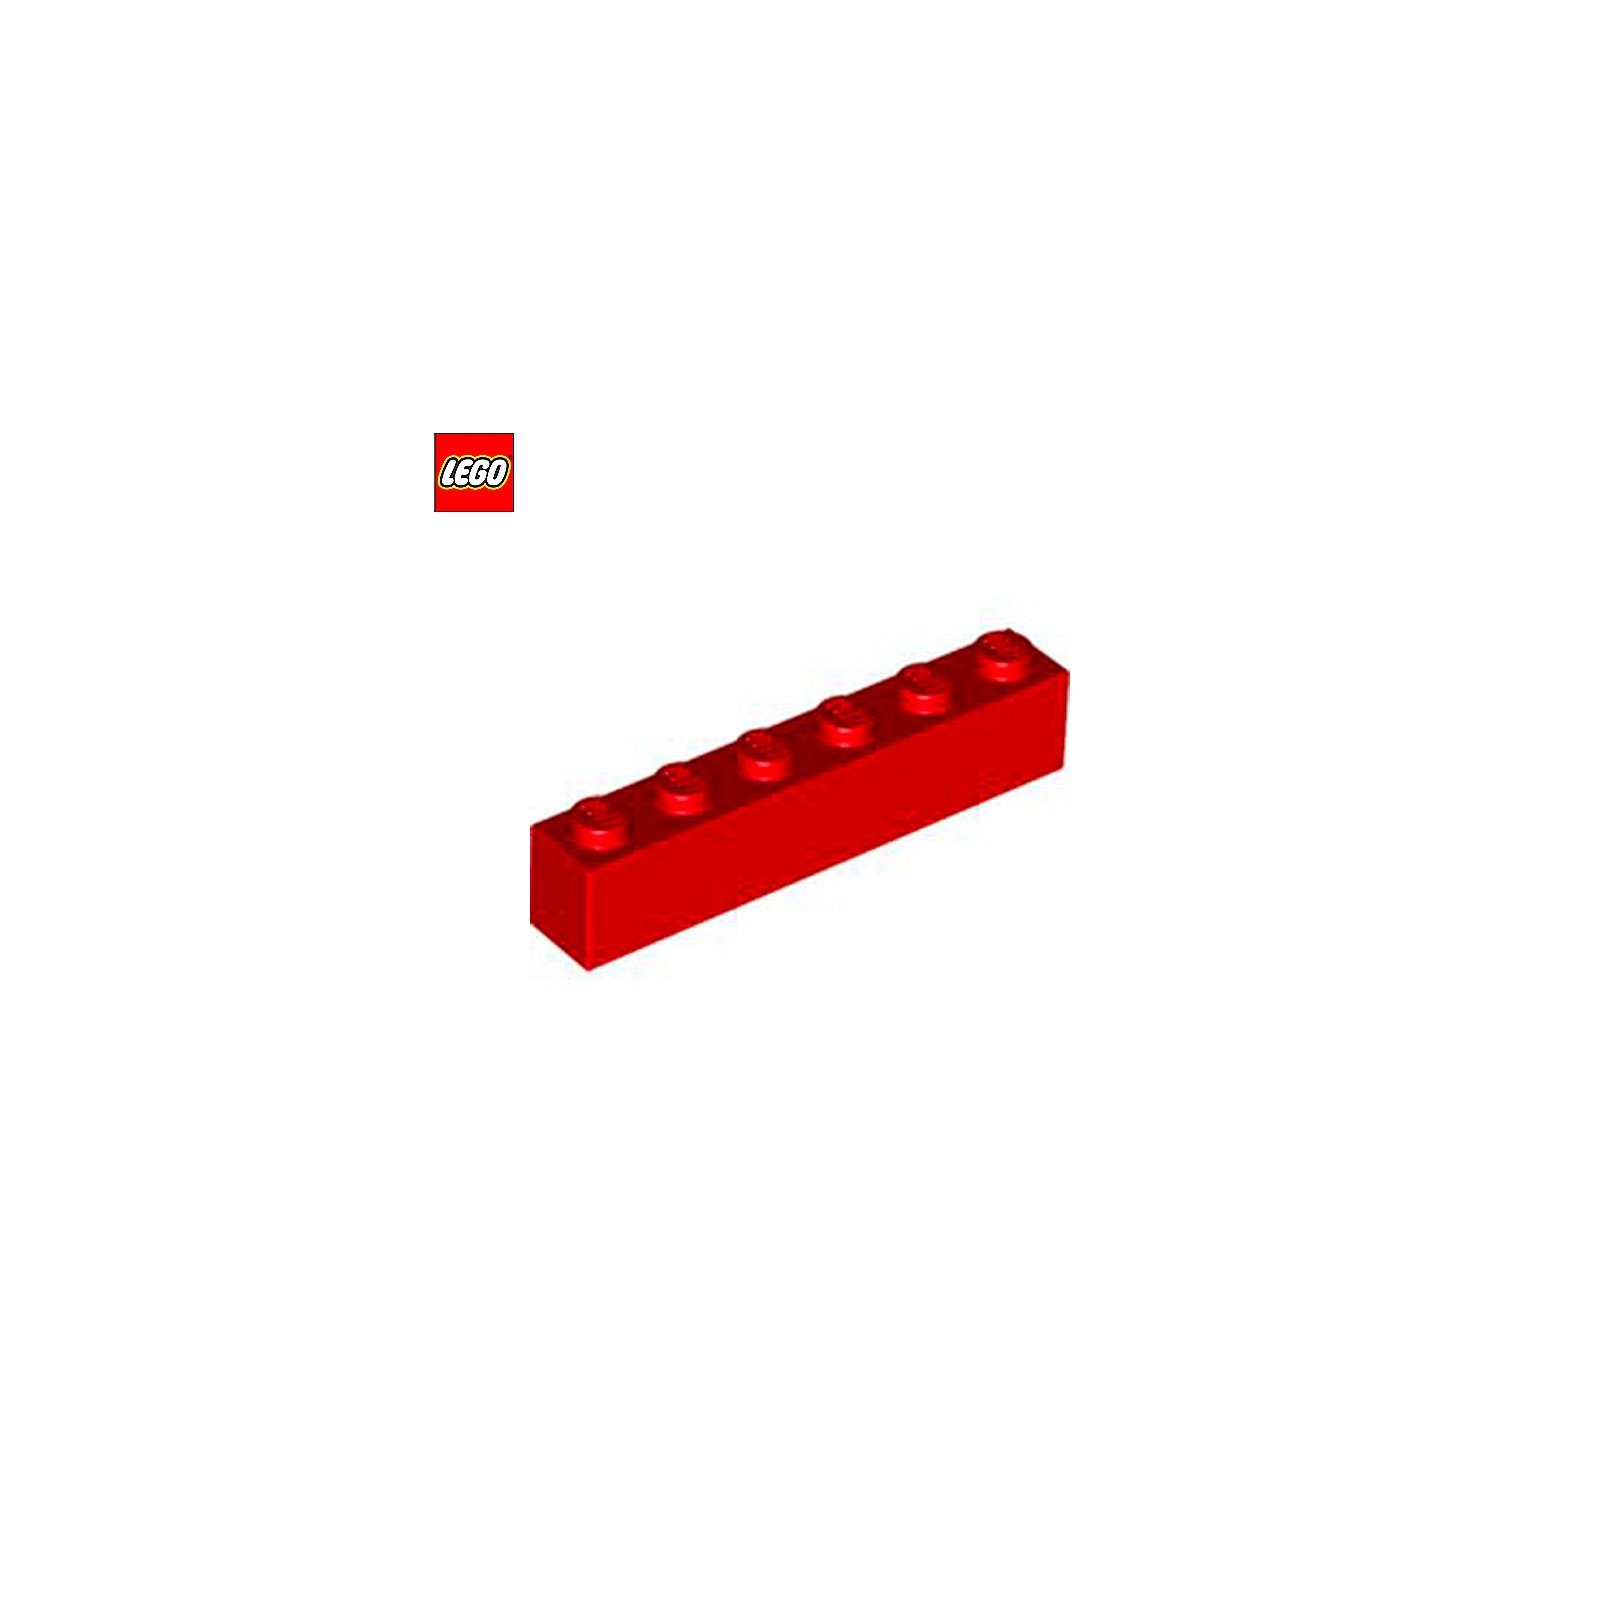 Brique 1x6 - Pièce LEGO® 3009